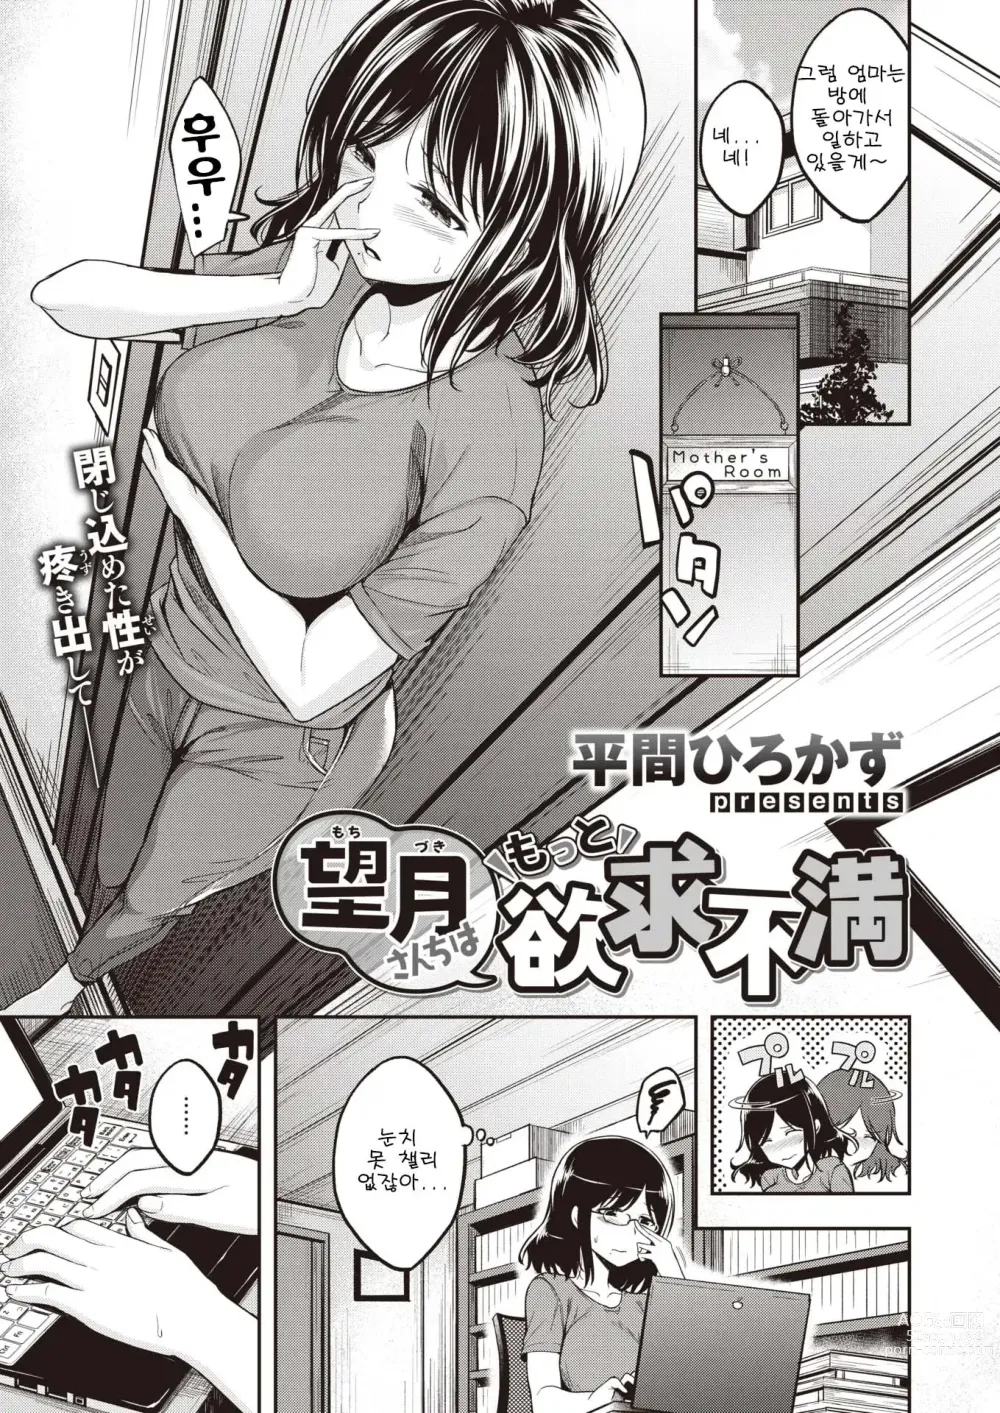 Page 1 of manga 모치즈키 가족은 좀 더 욕구불만